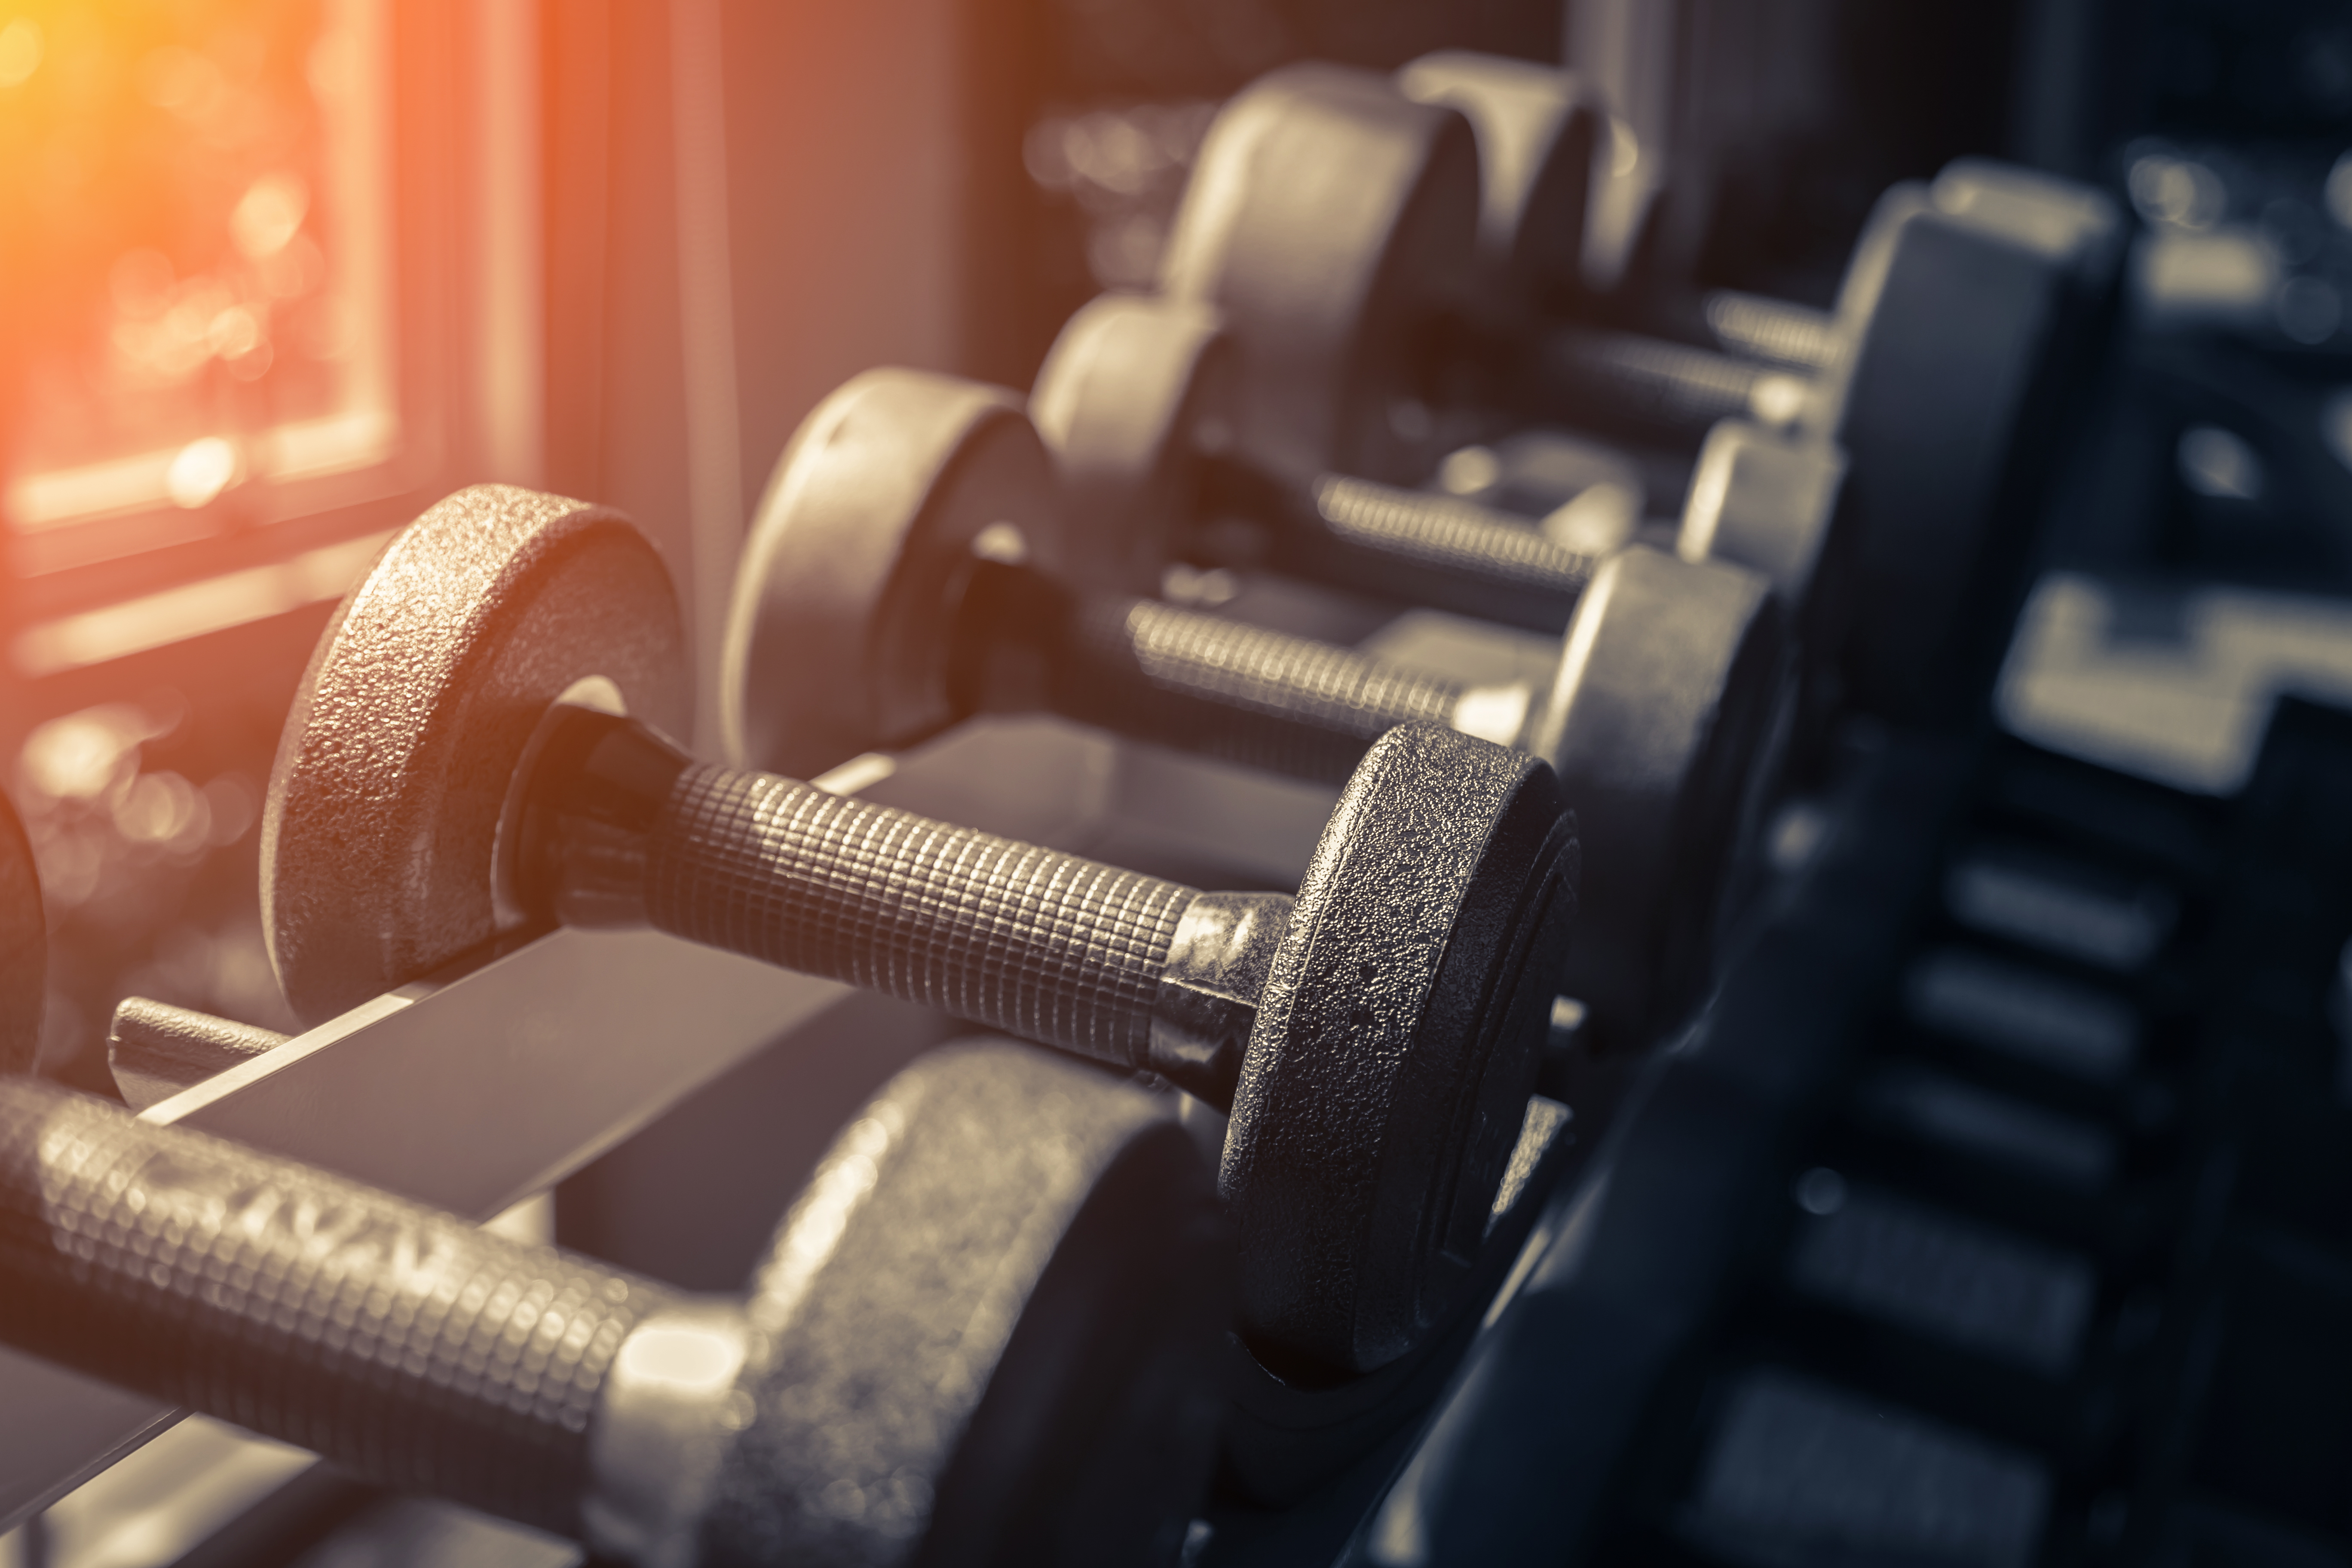 Las pesas ayudan a estimular los músculos, y también a fortalecer el sistema óseo. (Foto Prensa Libre: Shutterstock)